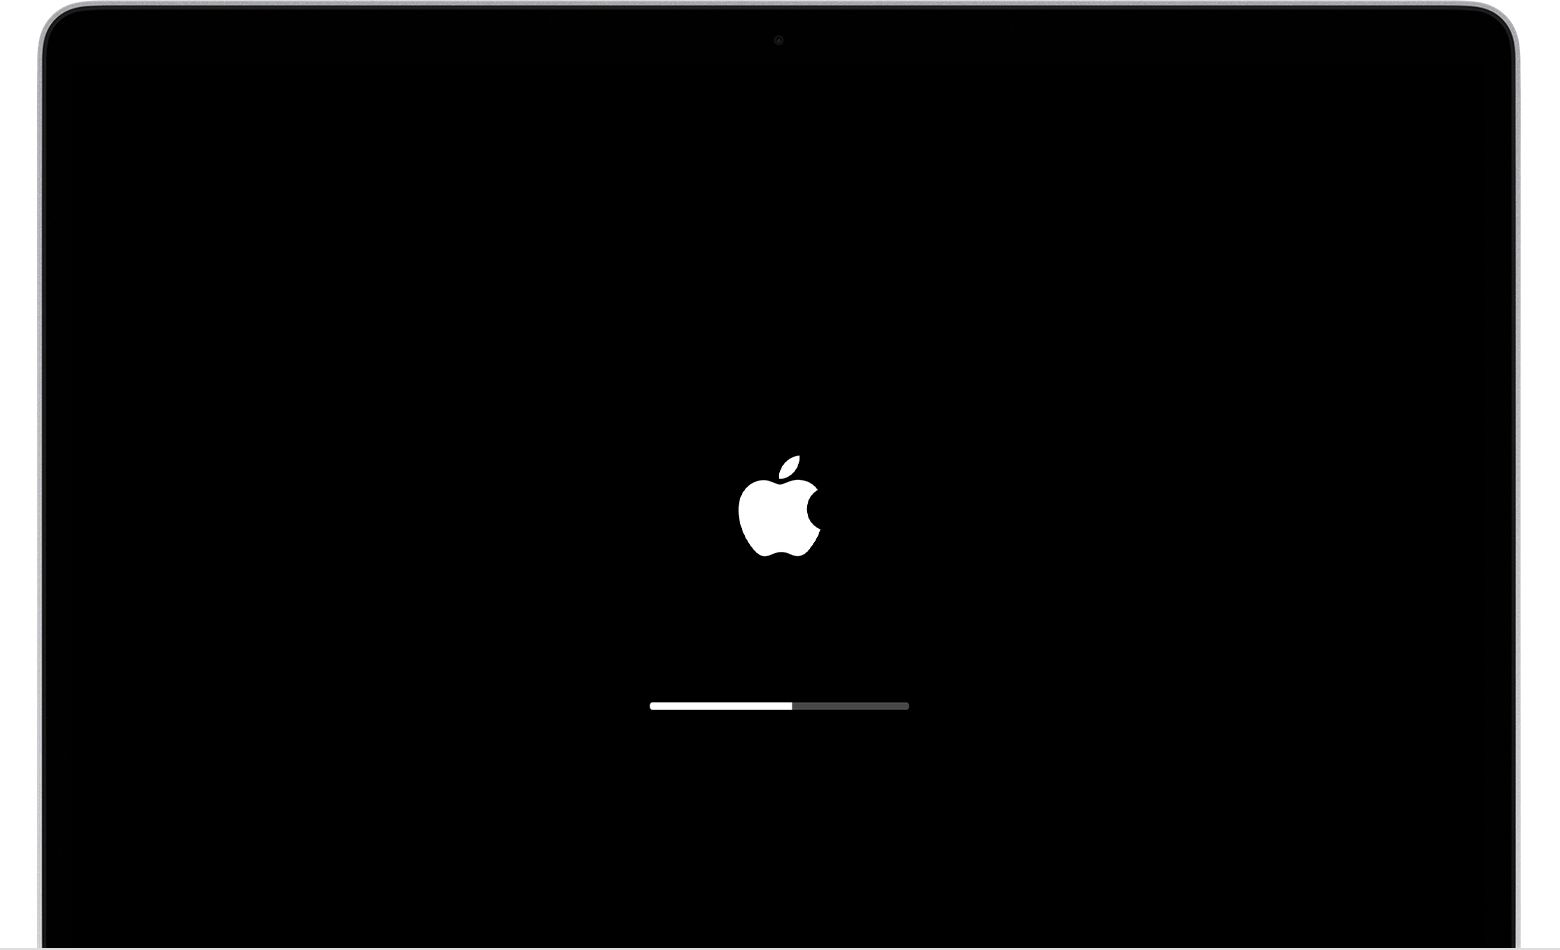 Starten Sie Ihren Mac im abgesicherten Modus, indem Sie ihn neu starten und die Shift-Taste gedrückt halten, bis das Apple-Logo angezeigt wird.
Wenn alles andere fehlschlägt, versuchen Sie das Update über das macOS-Wiederherstellungstool zu installieren.